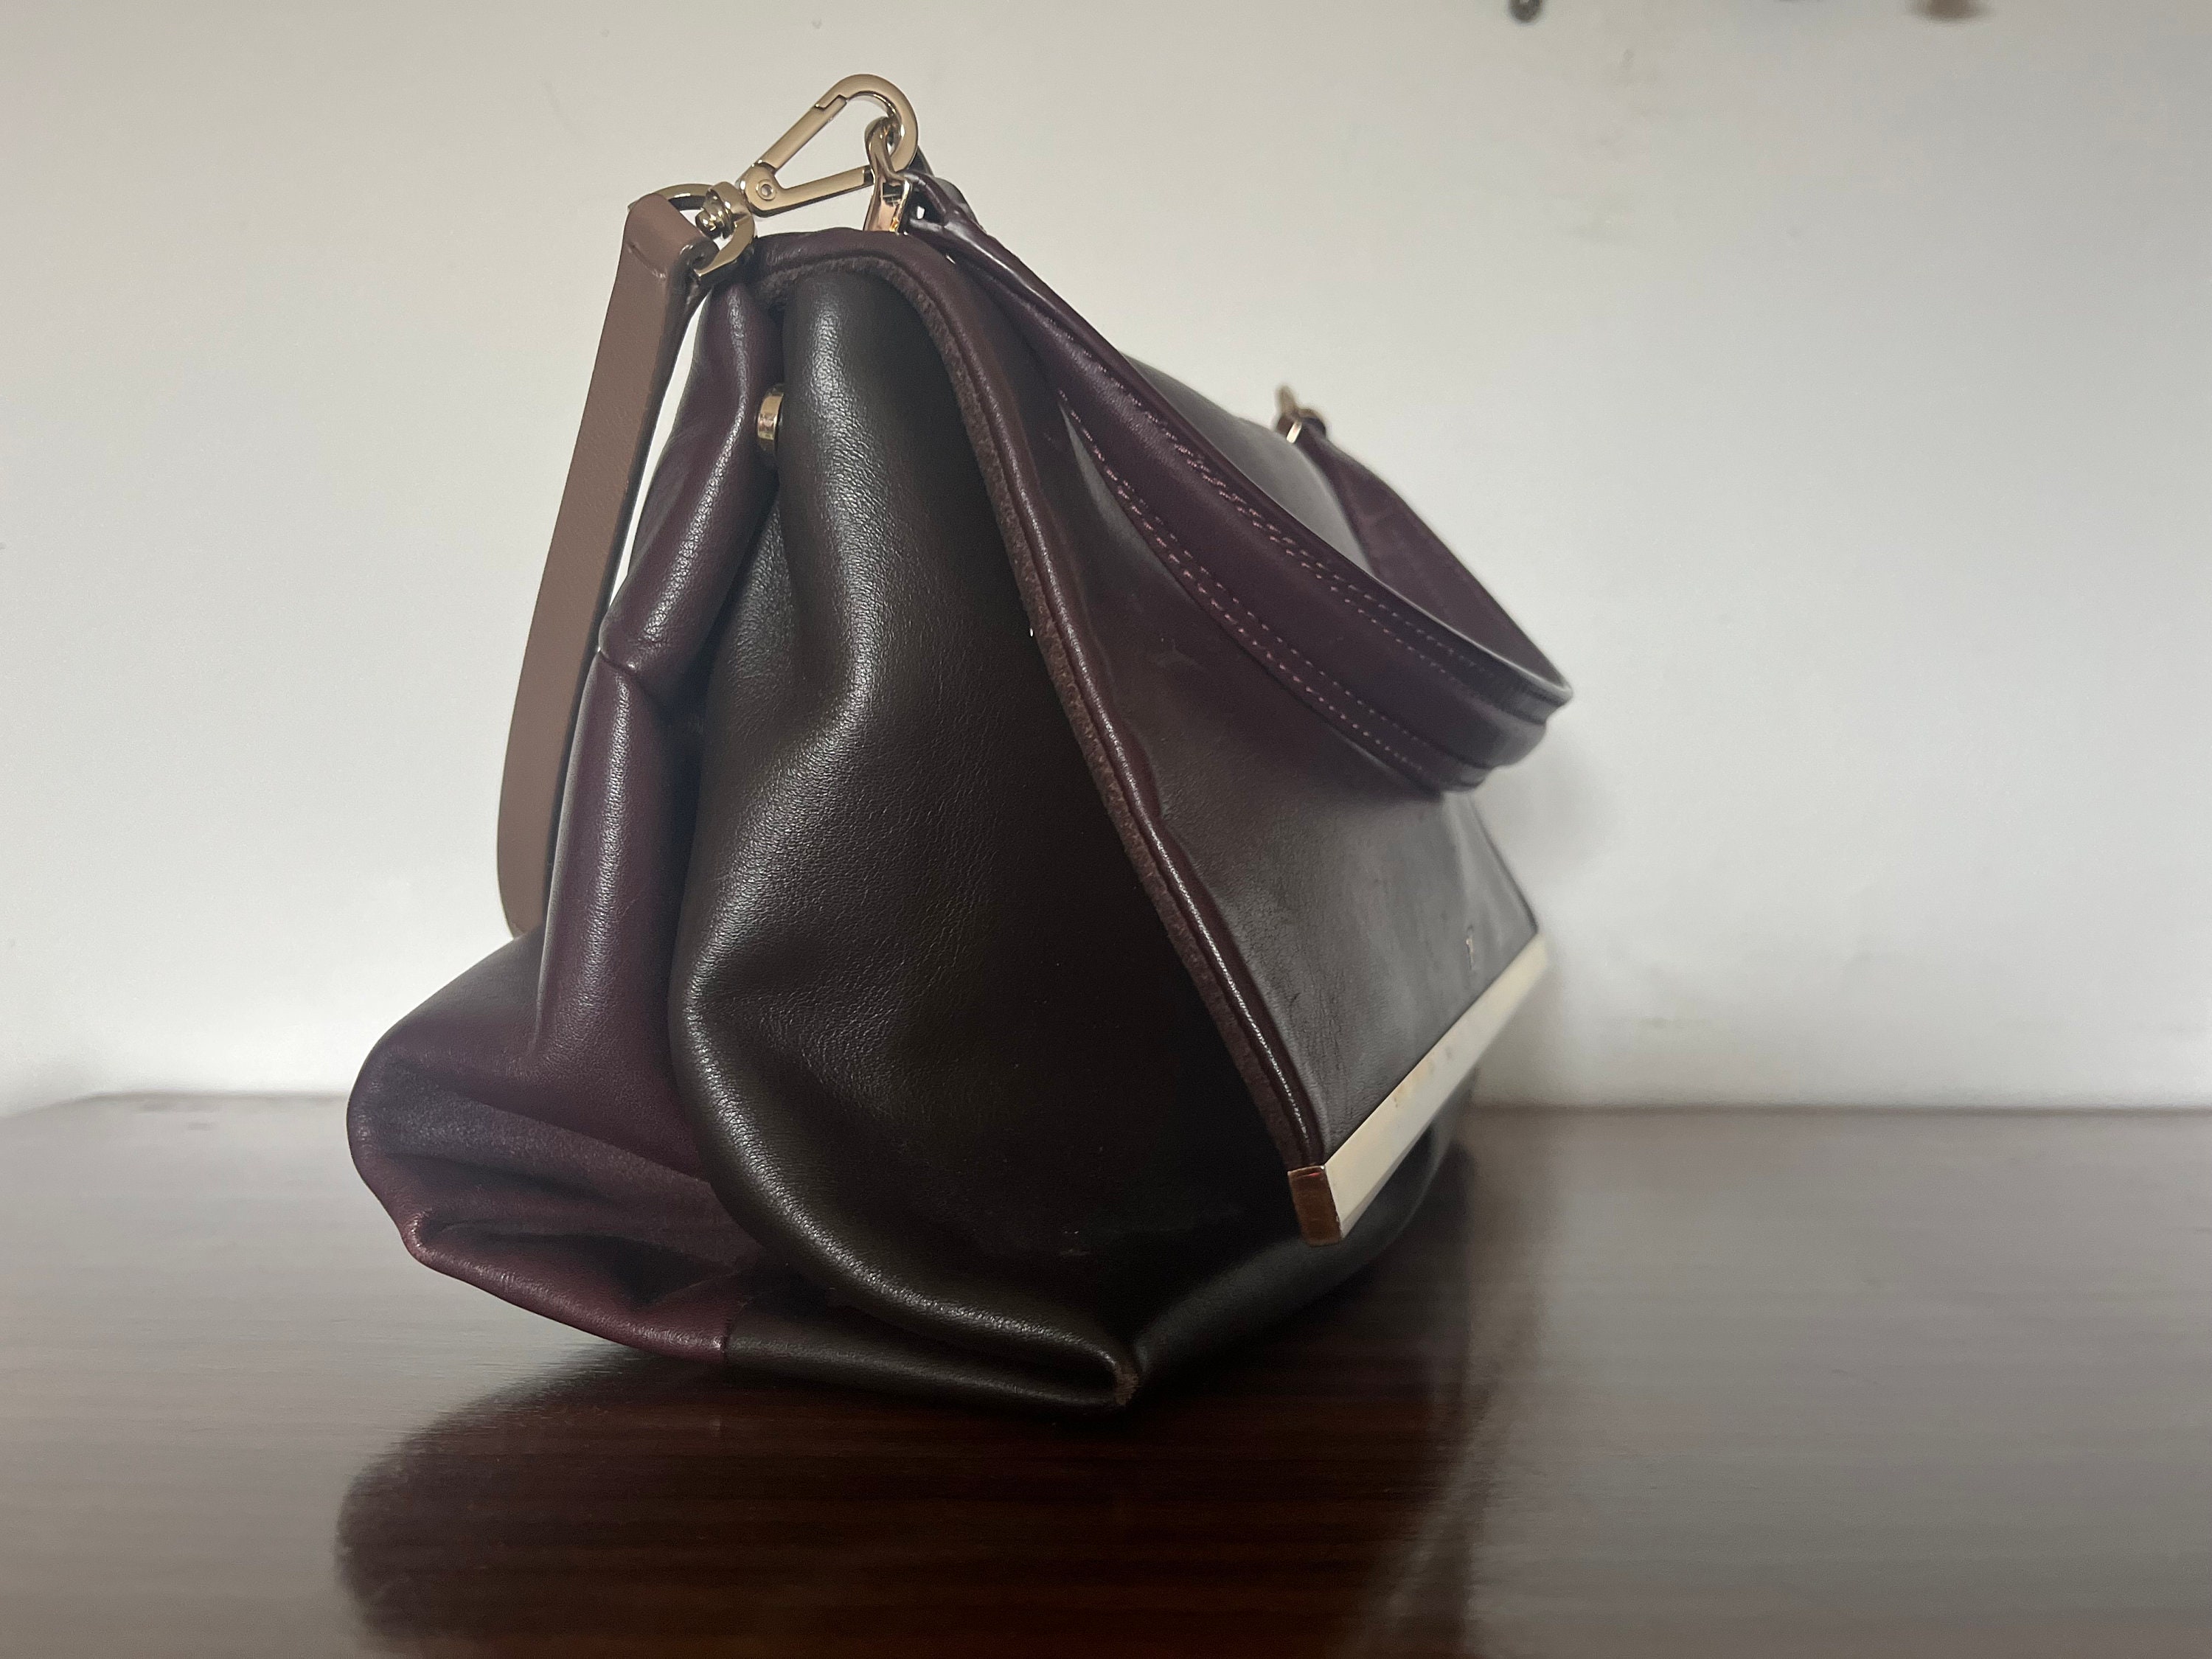 Carolina Herrera Bag / Made in Spain / Burgundy and Brown Bag 